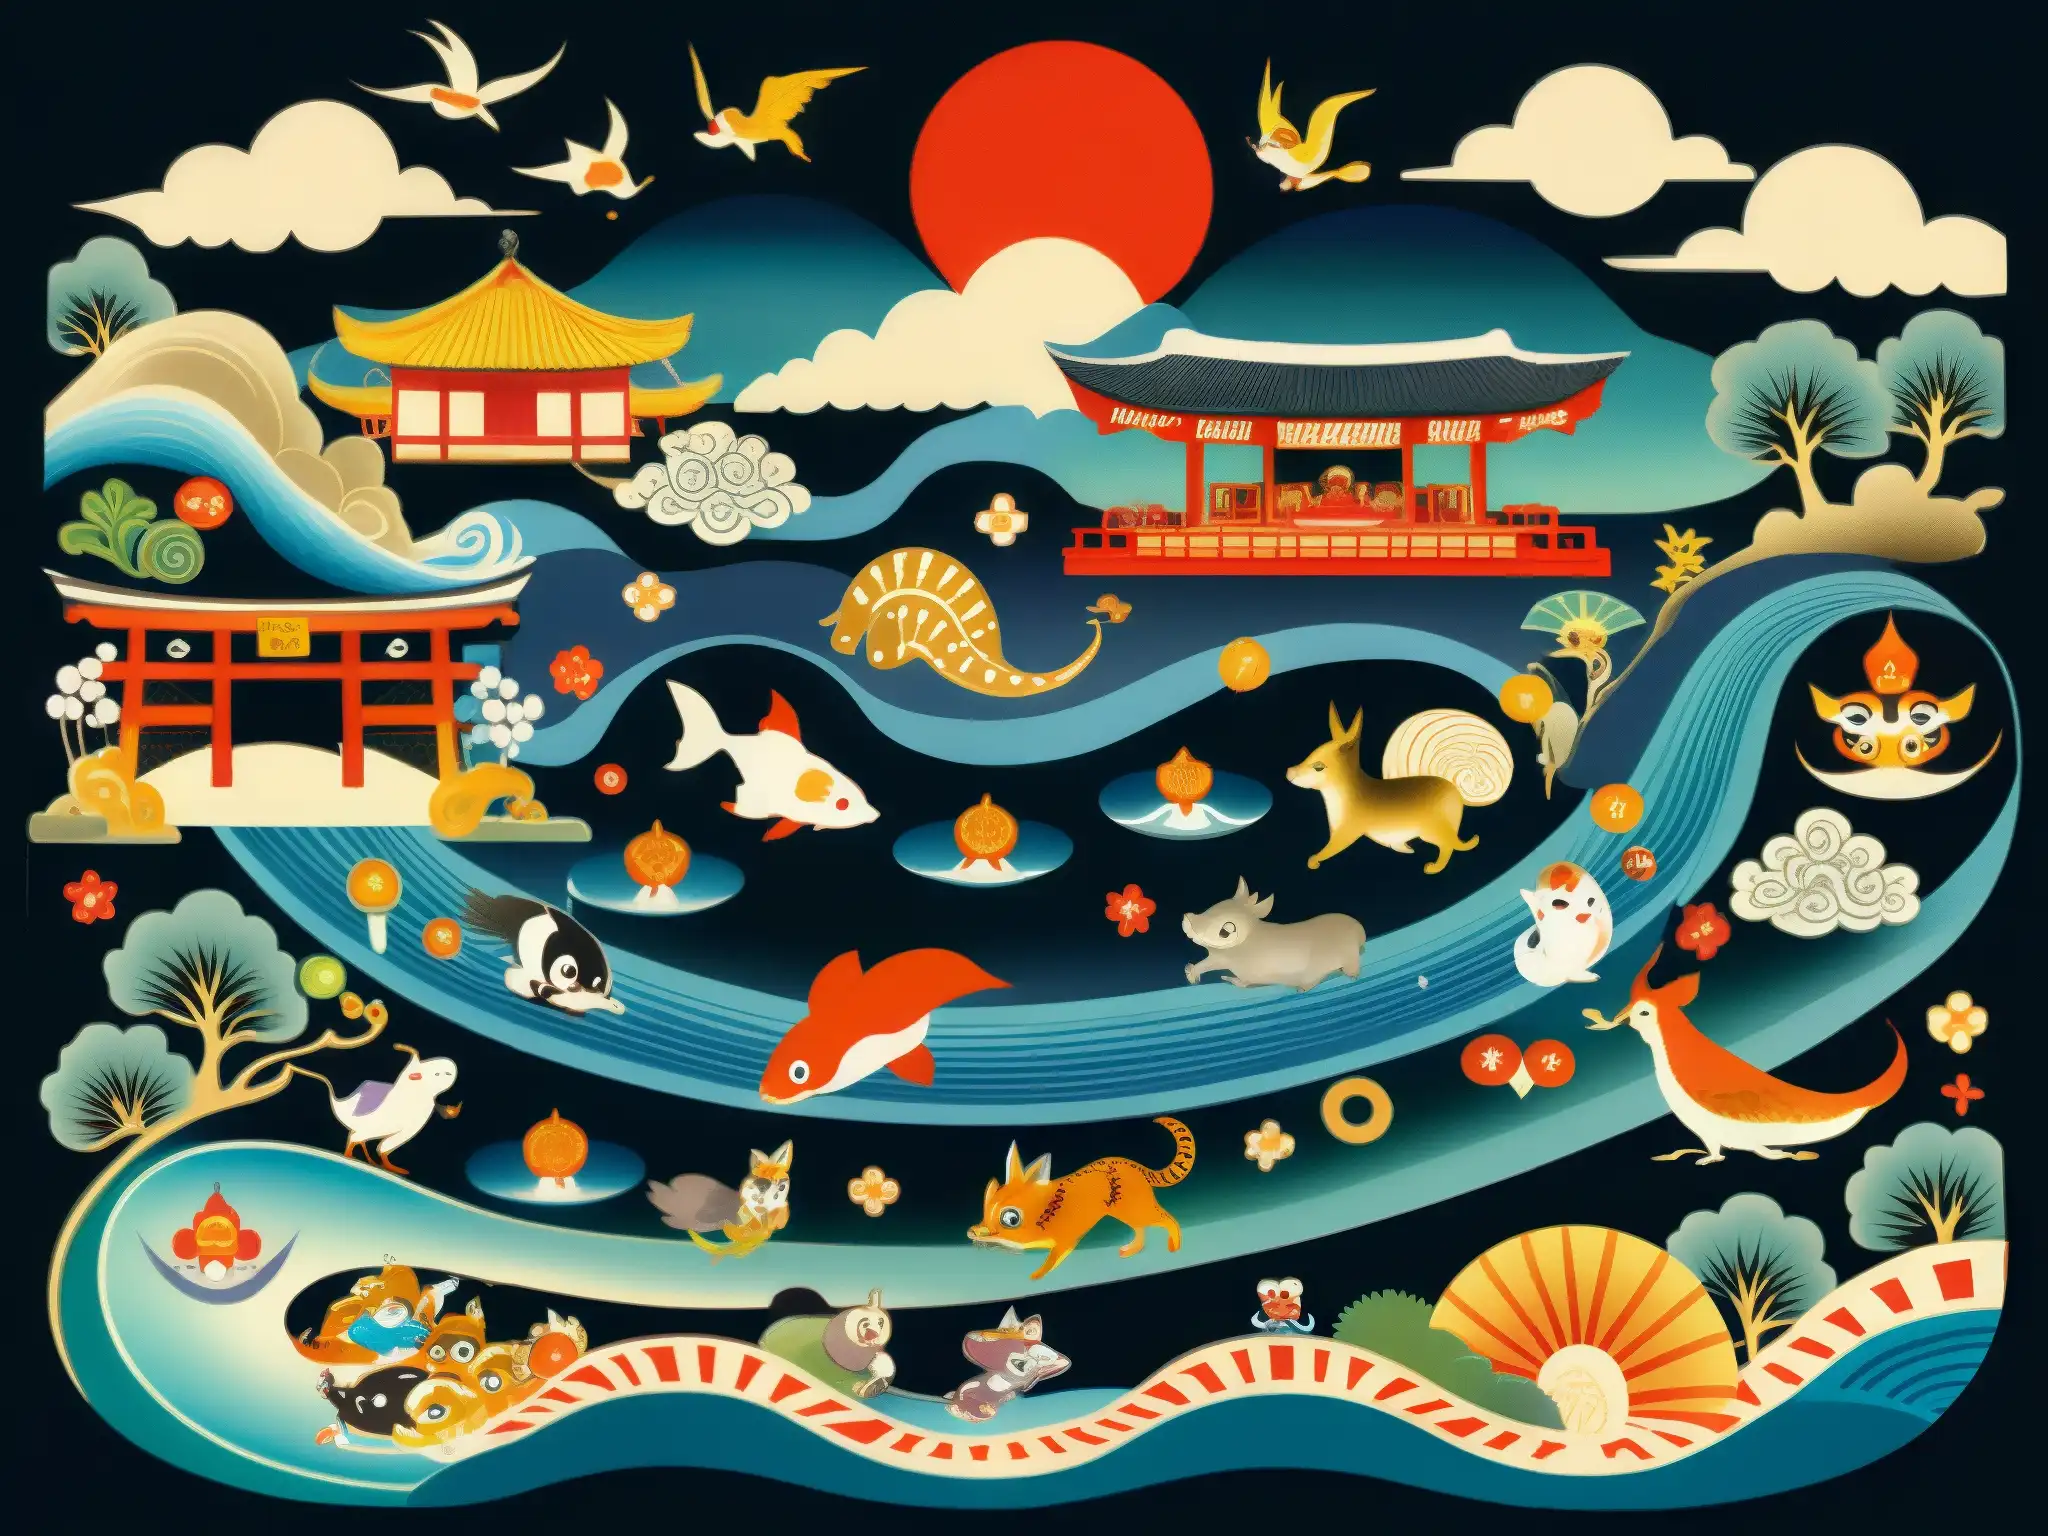 Una impresionante pintura japonesa de un mercado Yokai, detallada y llena de vida